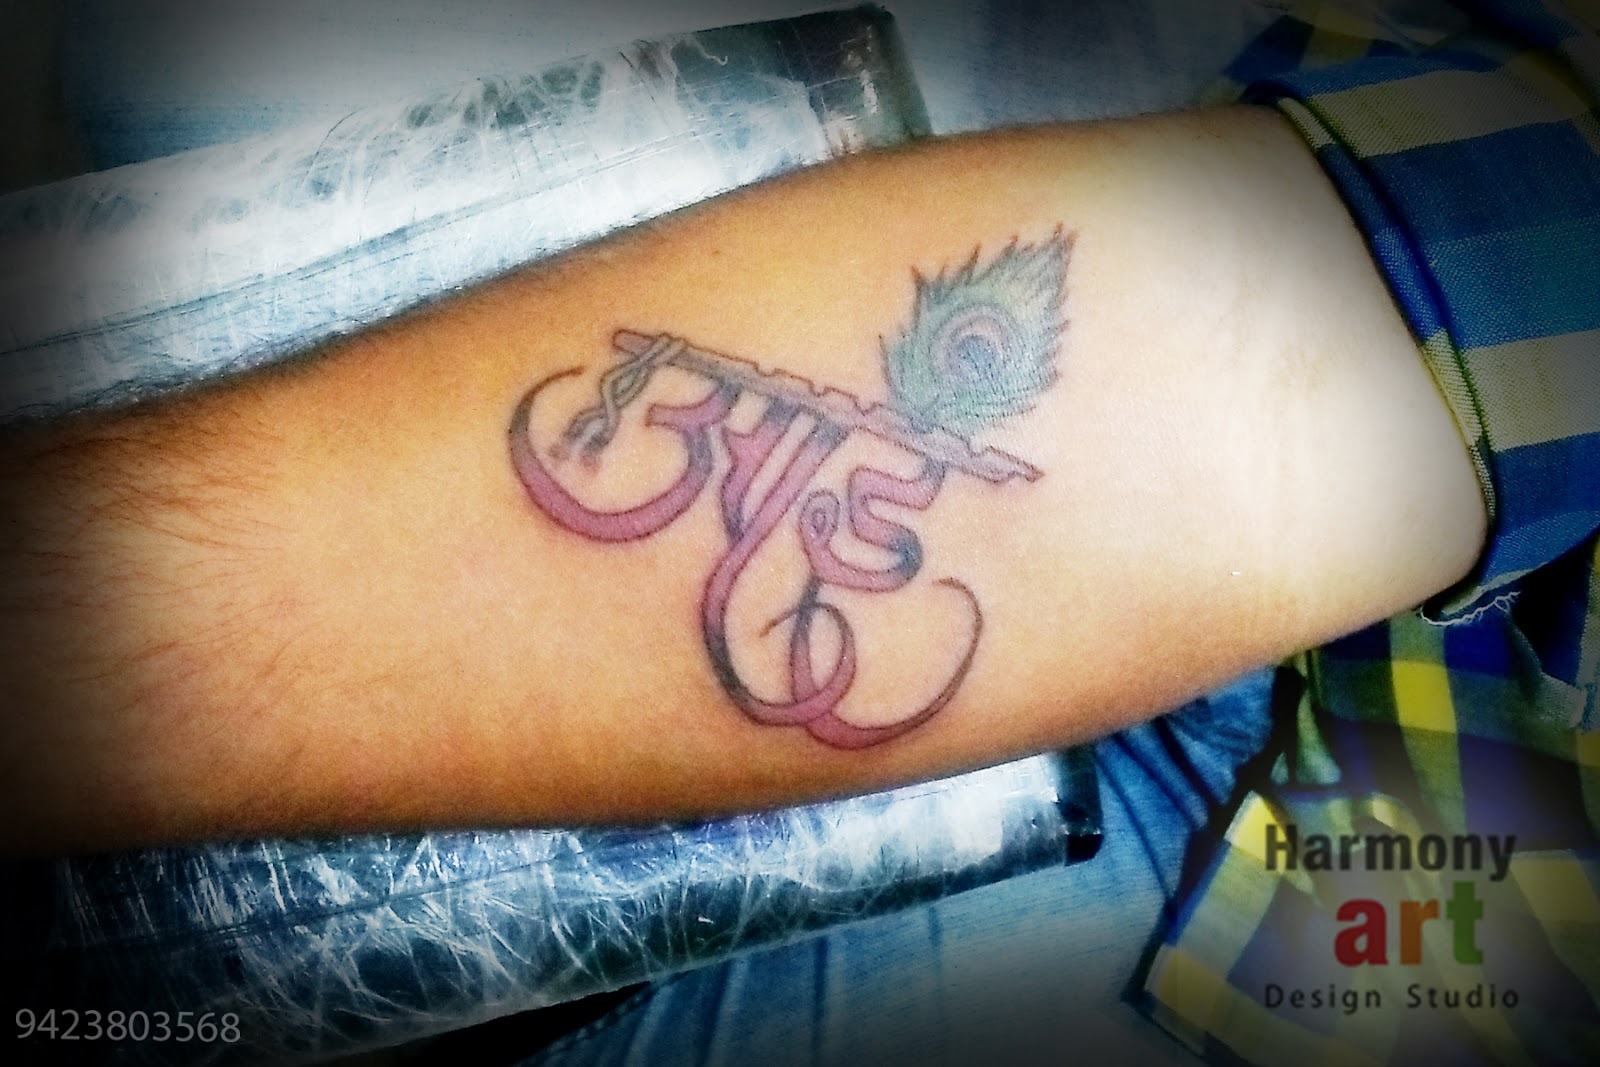 aai baba with Ganesha tattoo design by Samarveera2008 on DeviantArt